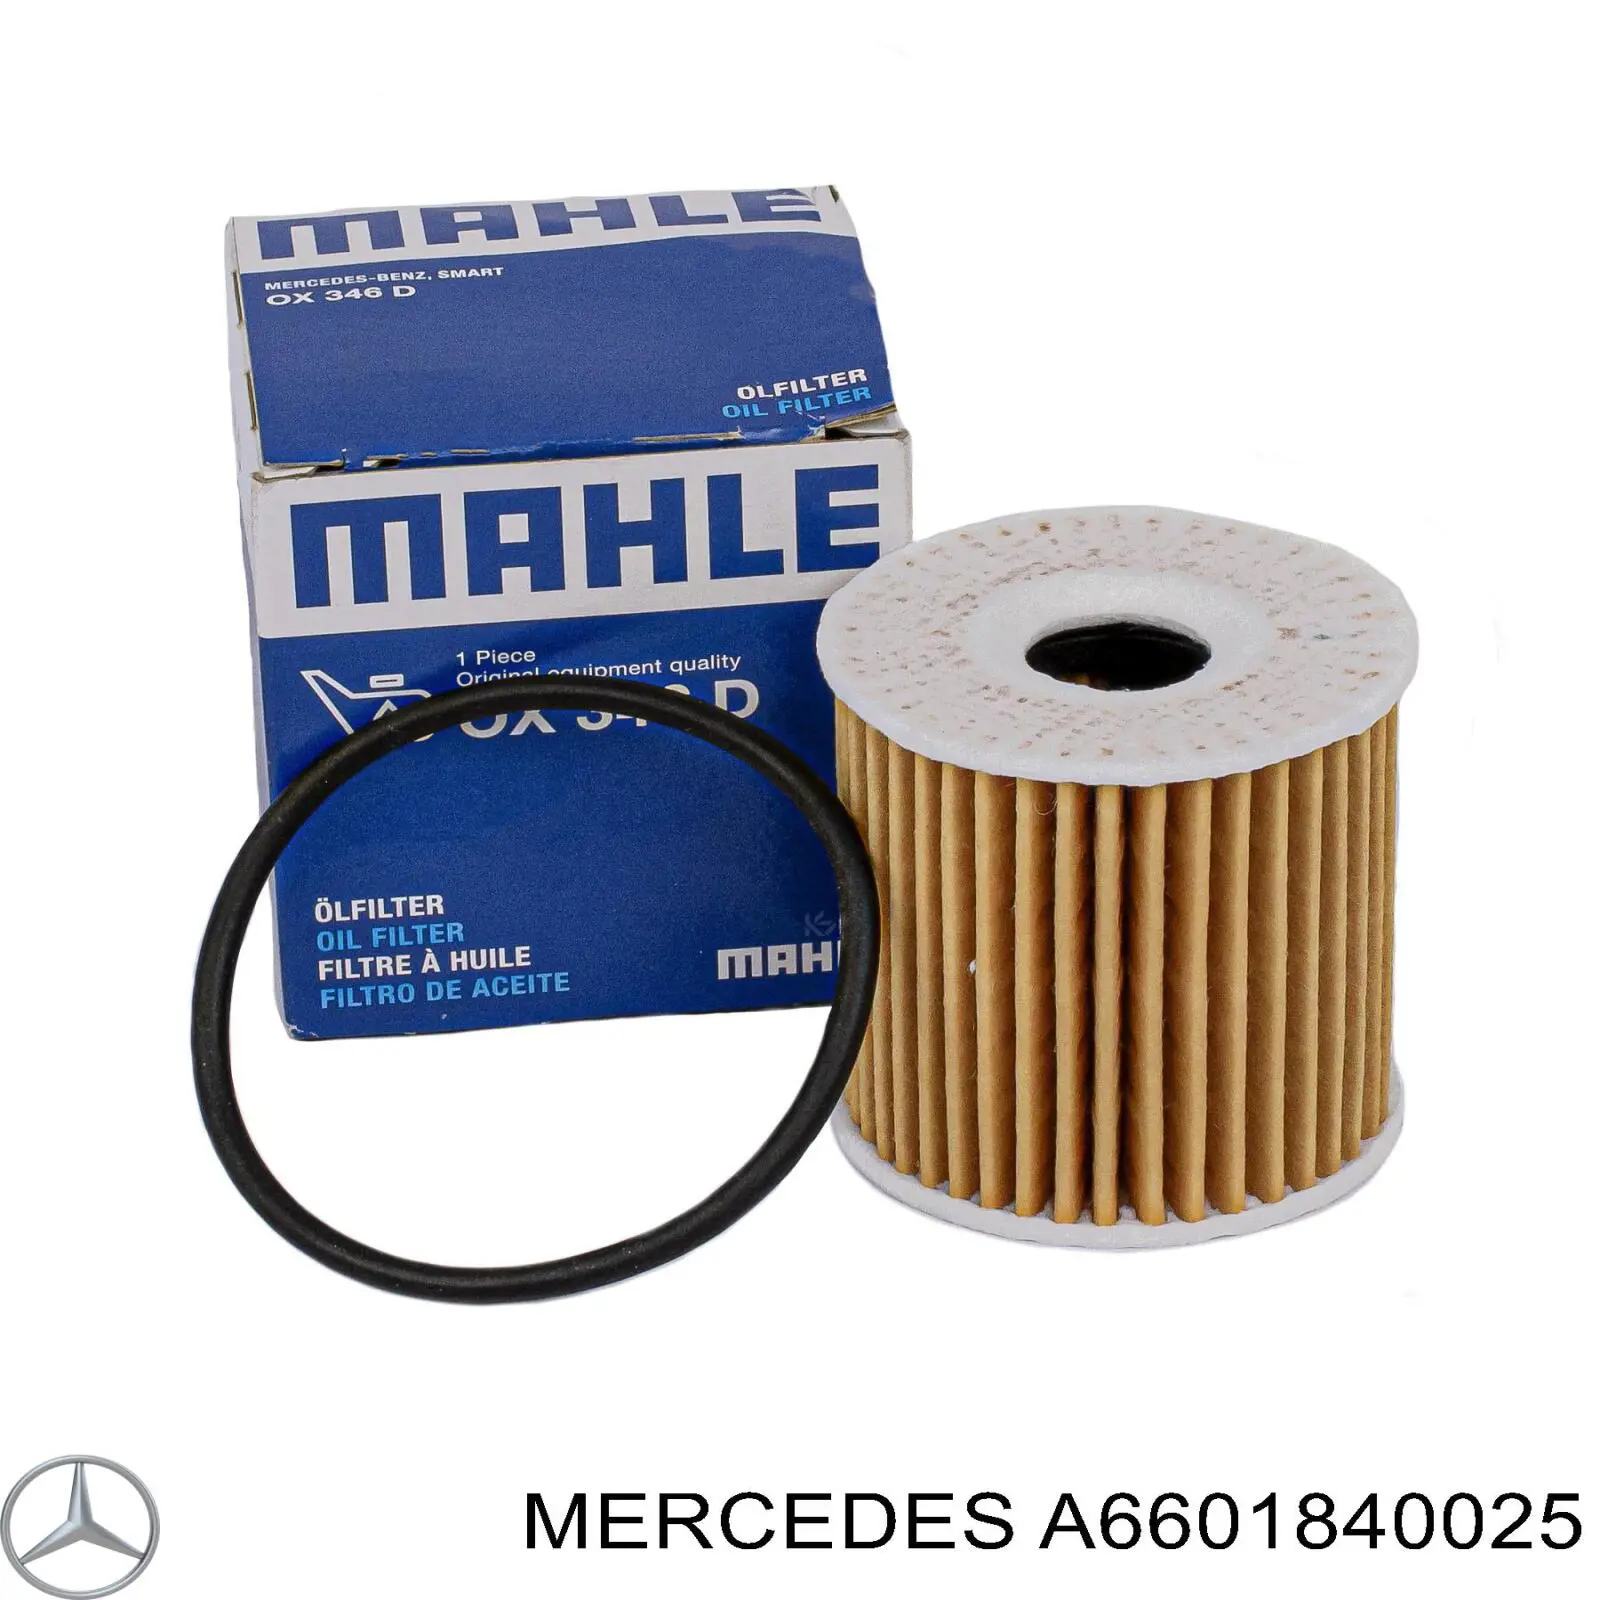 A6601840025 Mercedes filtro de aceite